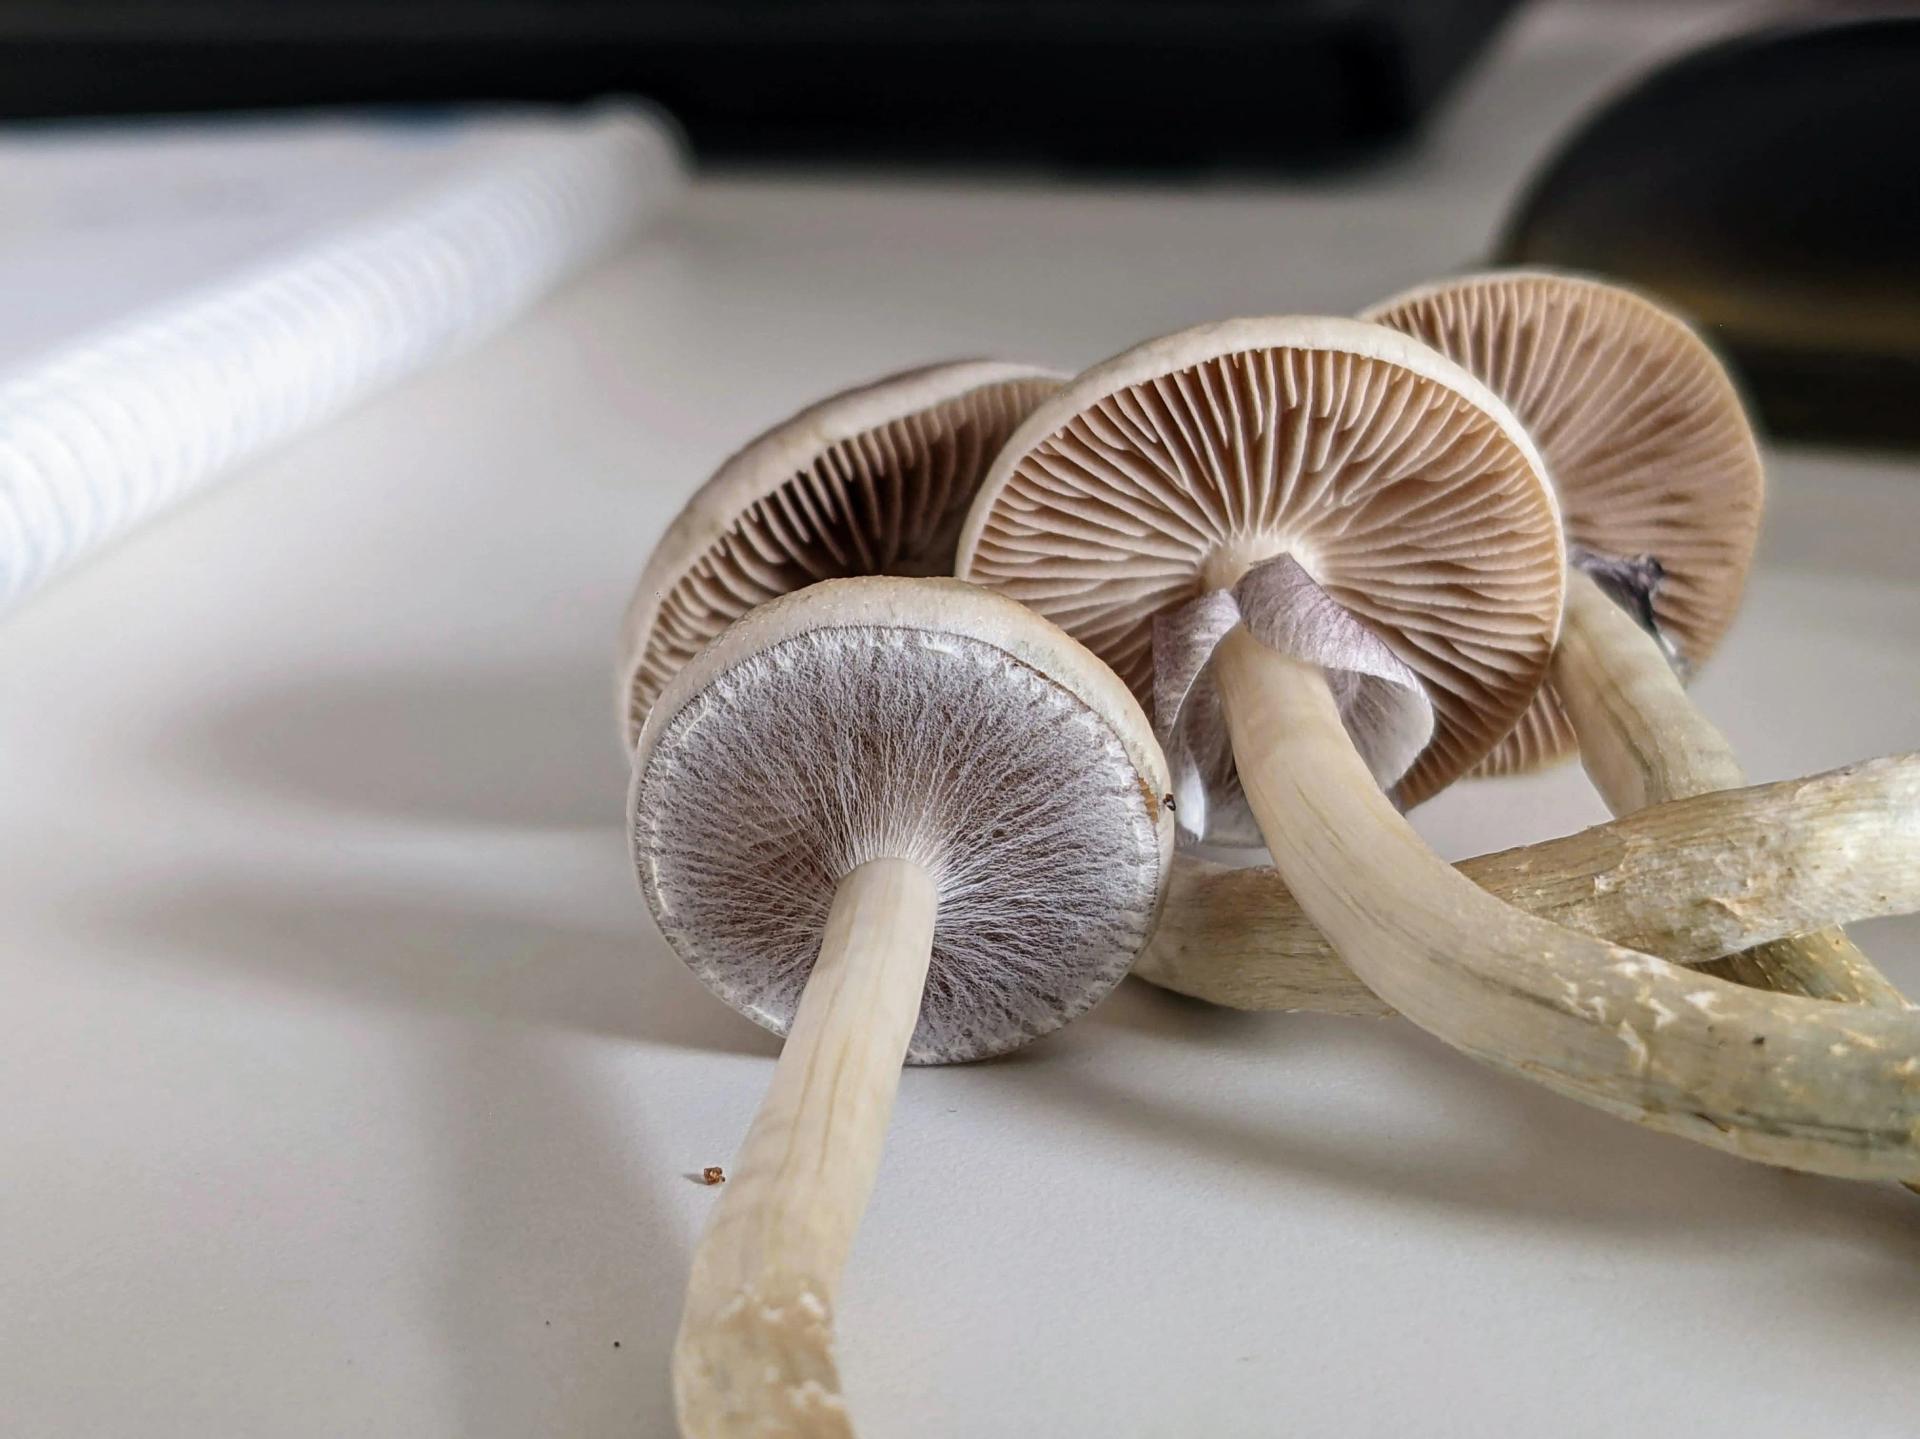 Mushrooms on the Table